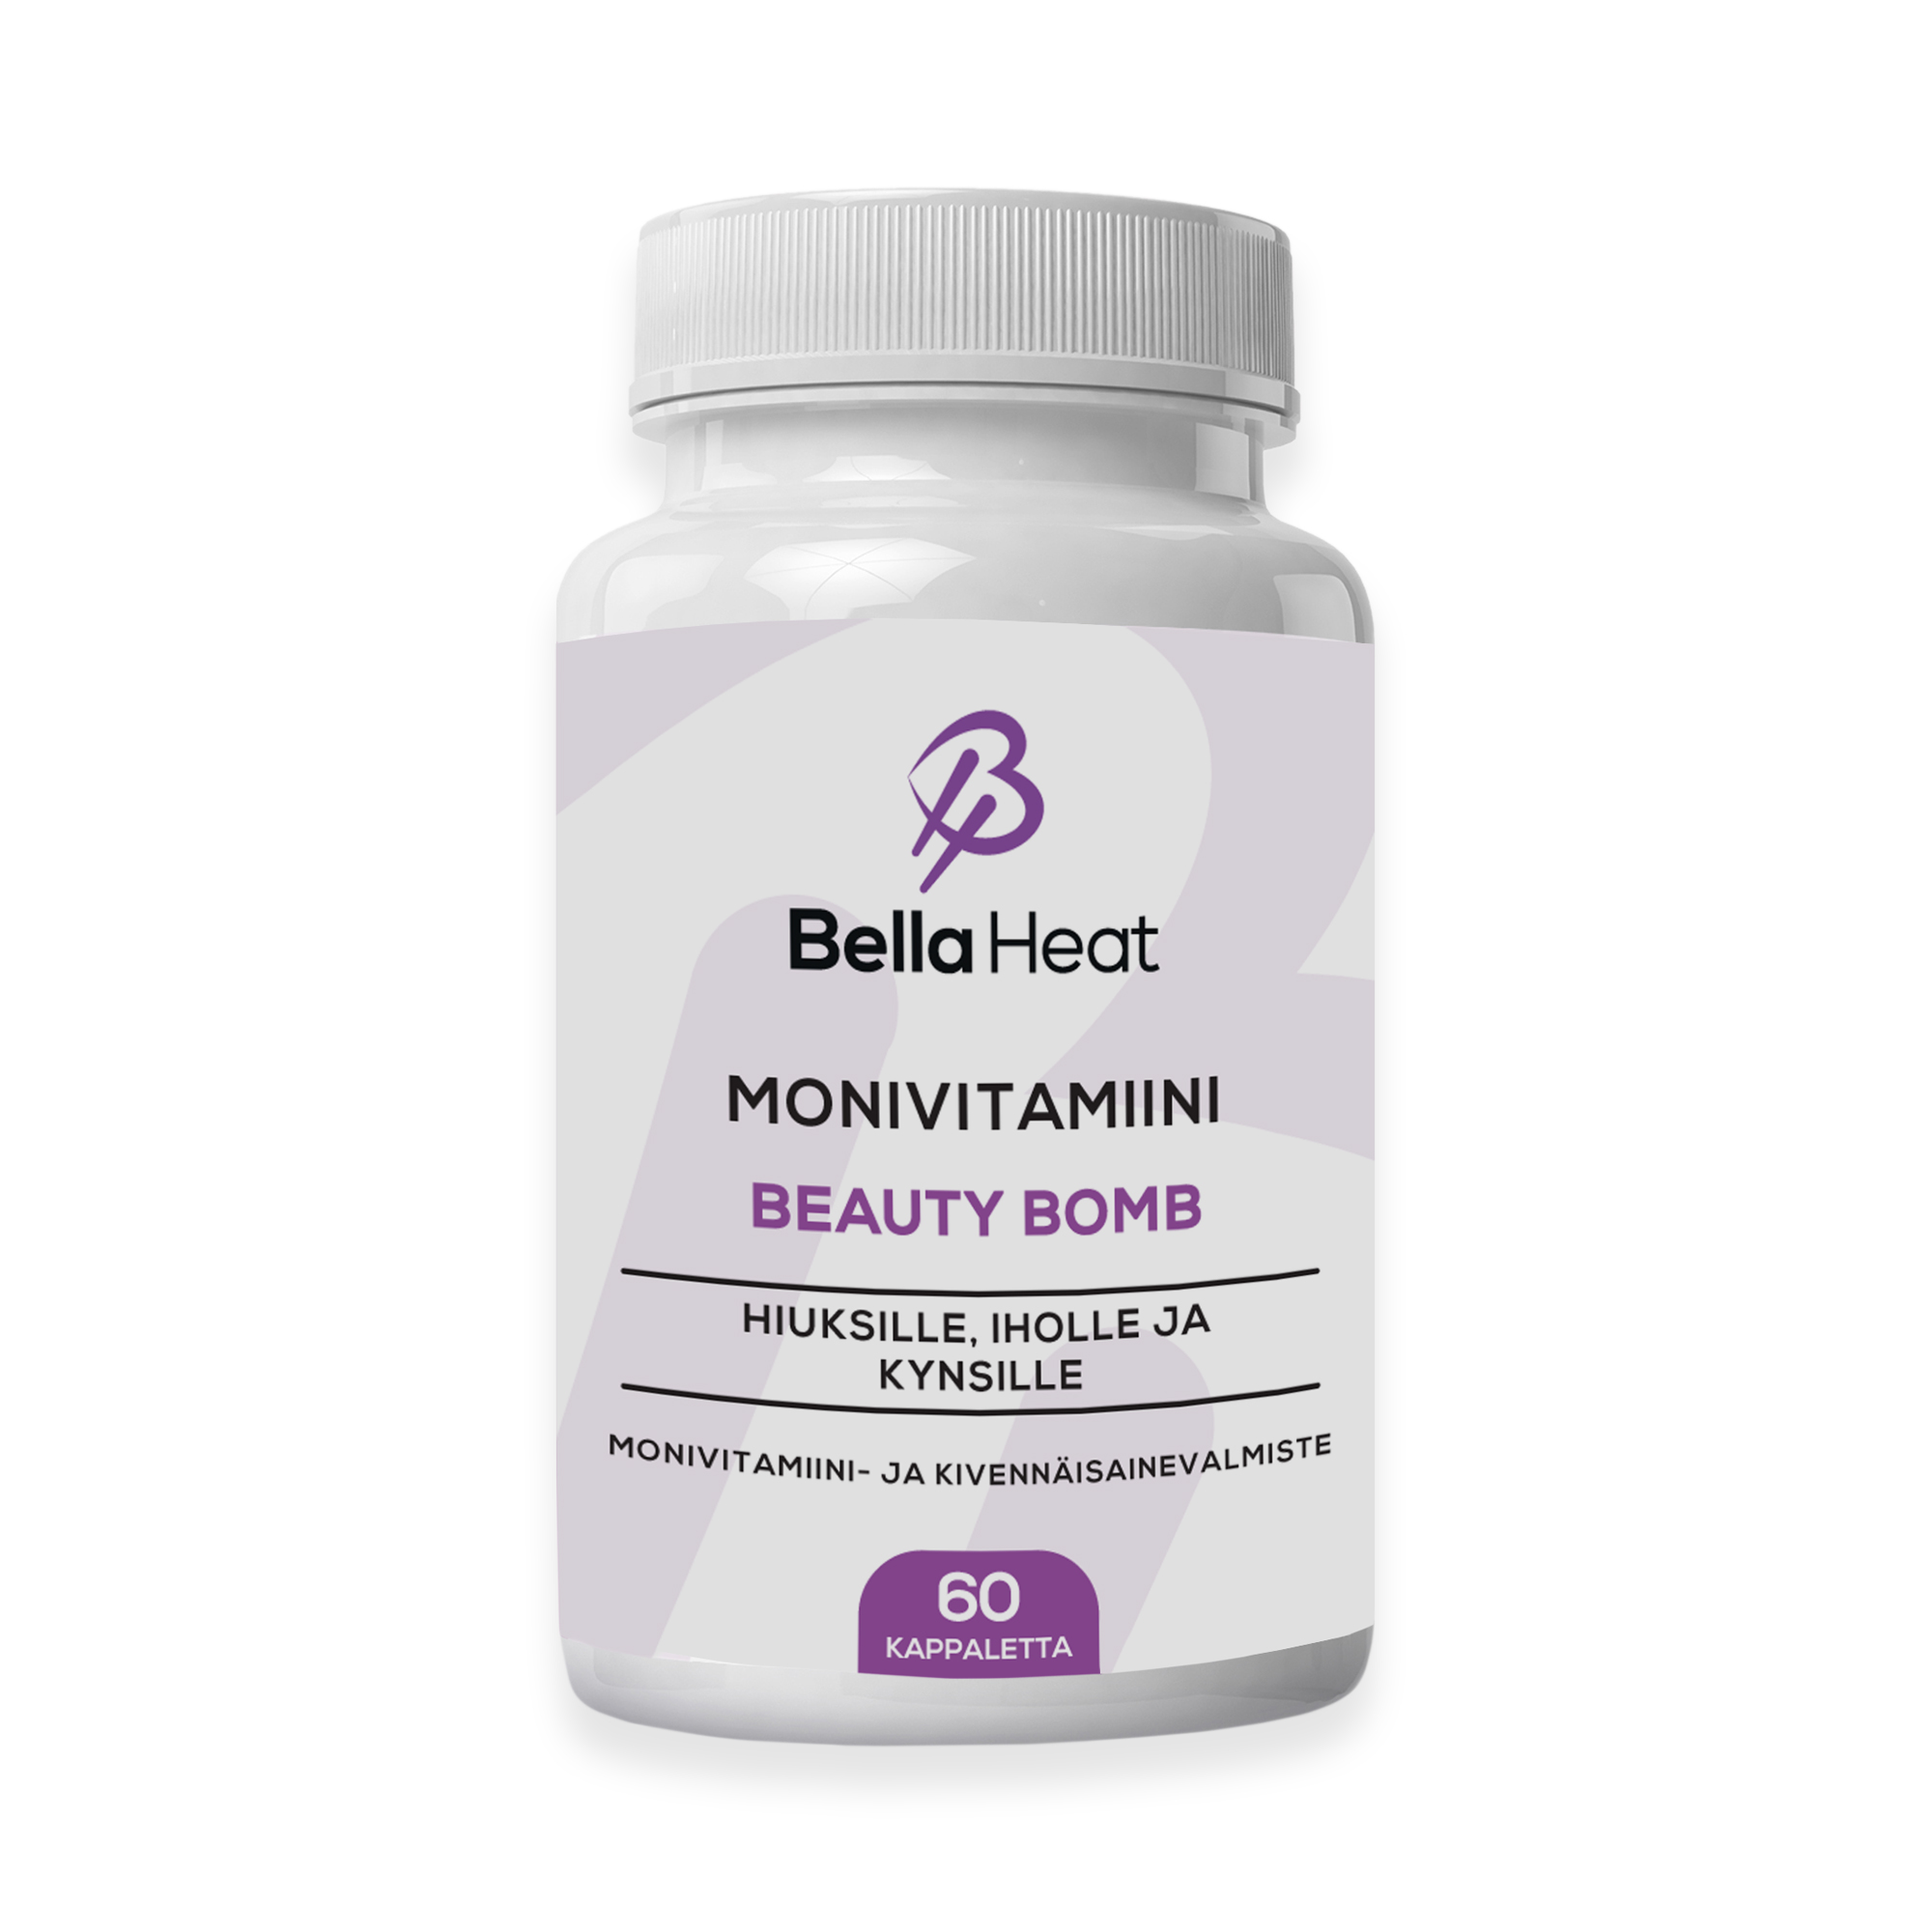 Bella Heat Beauty Bomb monivitamiini hiuksille, iholle ja kynsille.